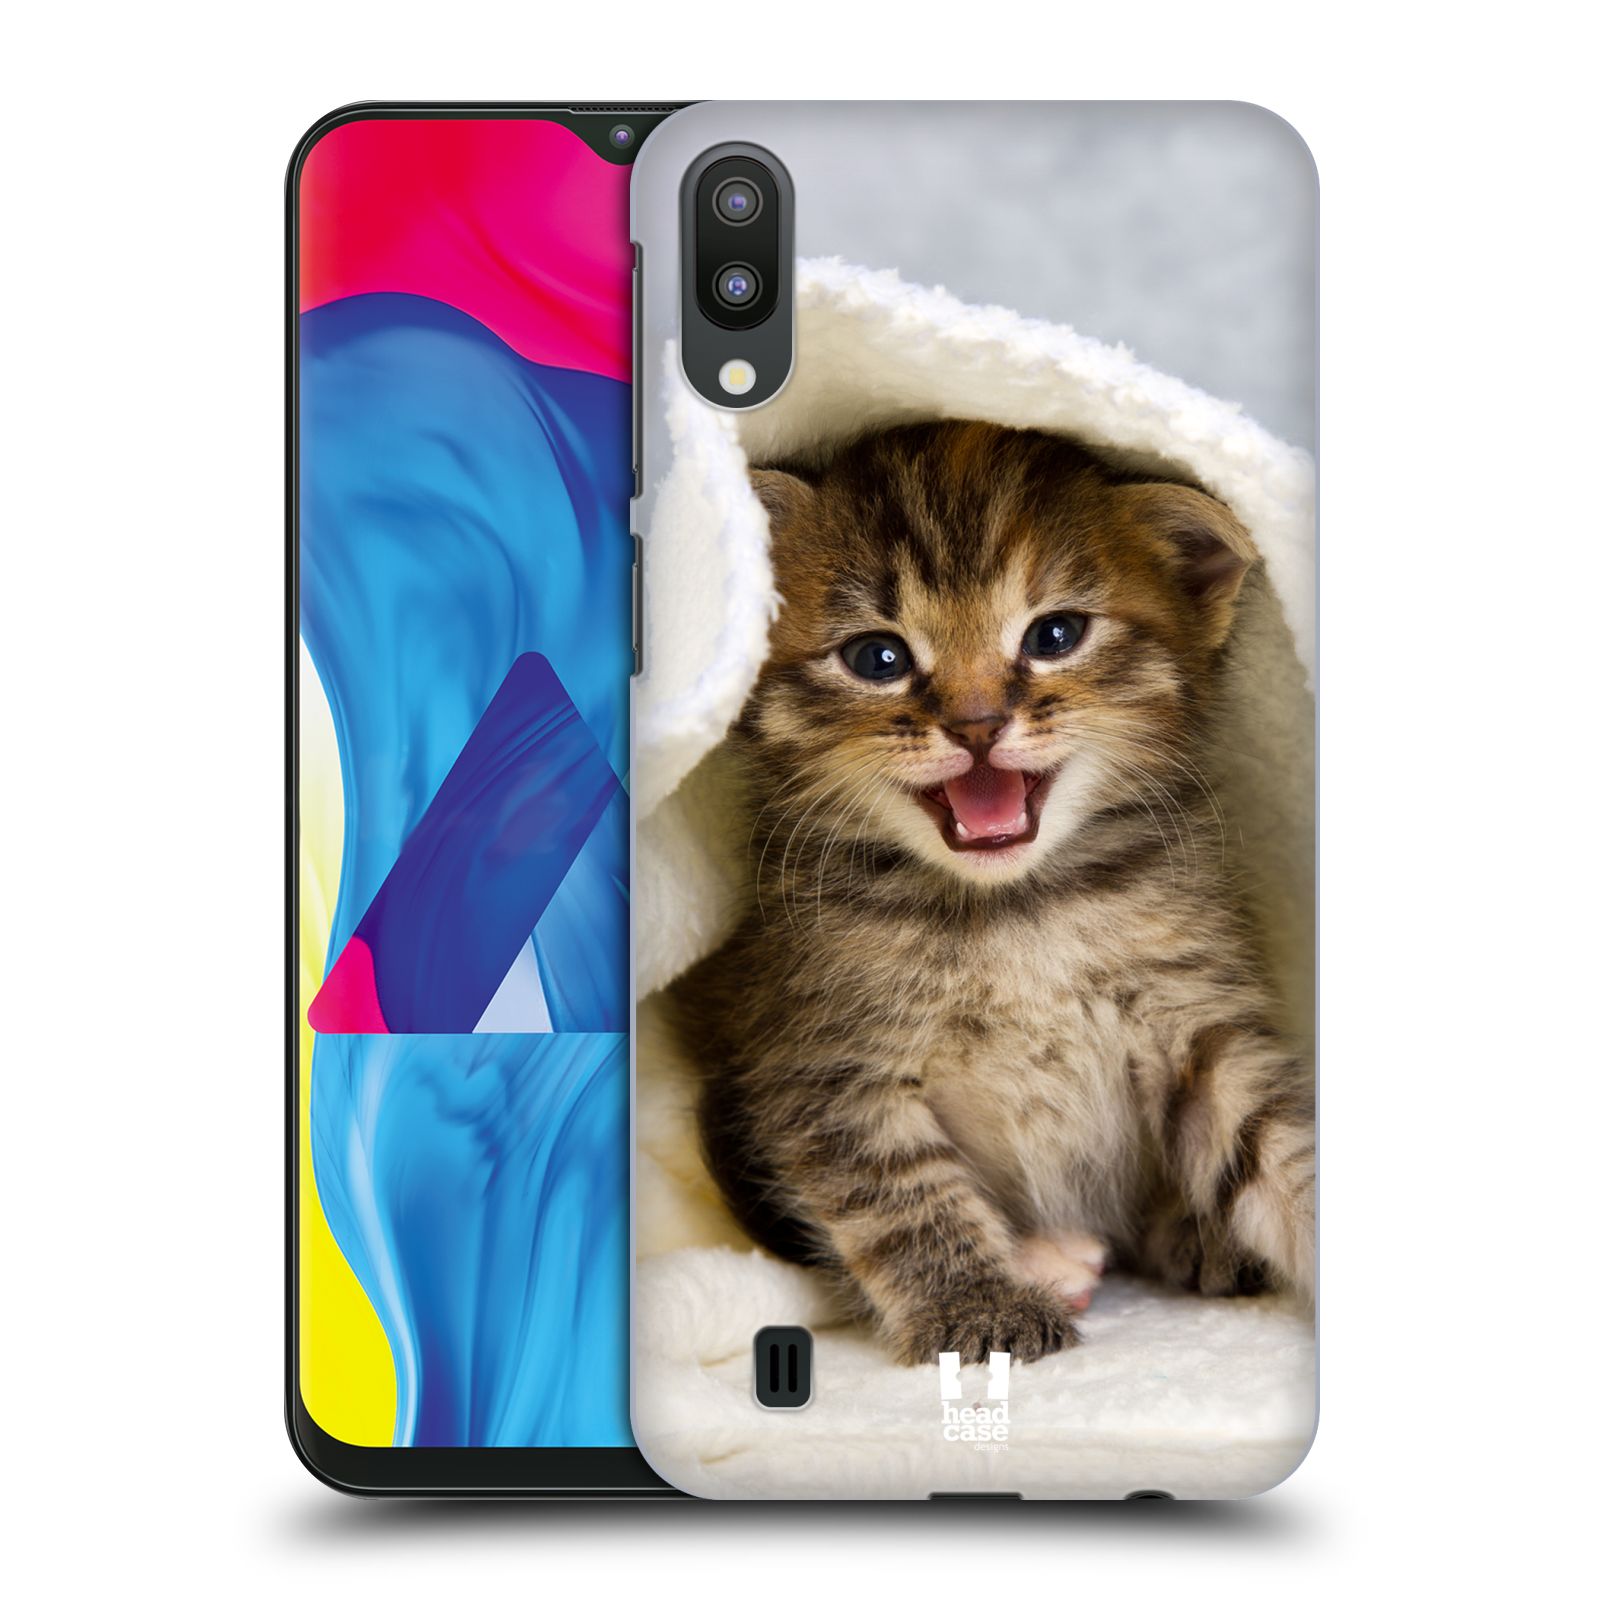 Plastový obal HEAD CASE na mobil Samsung Galaxy M10 vzor Kočičky koťata foto kotě v ručníku